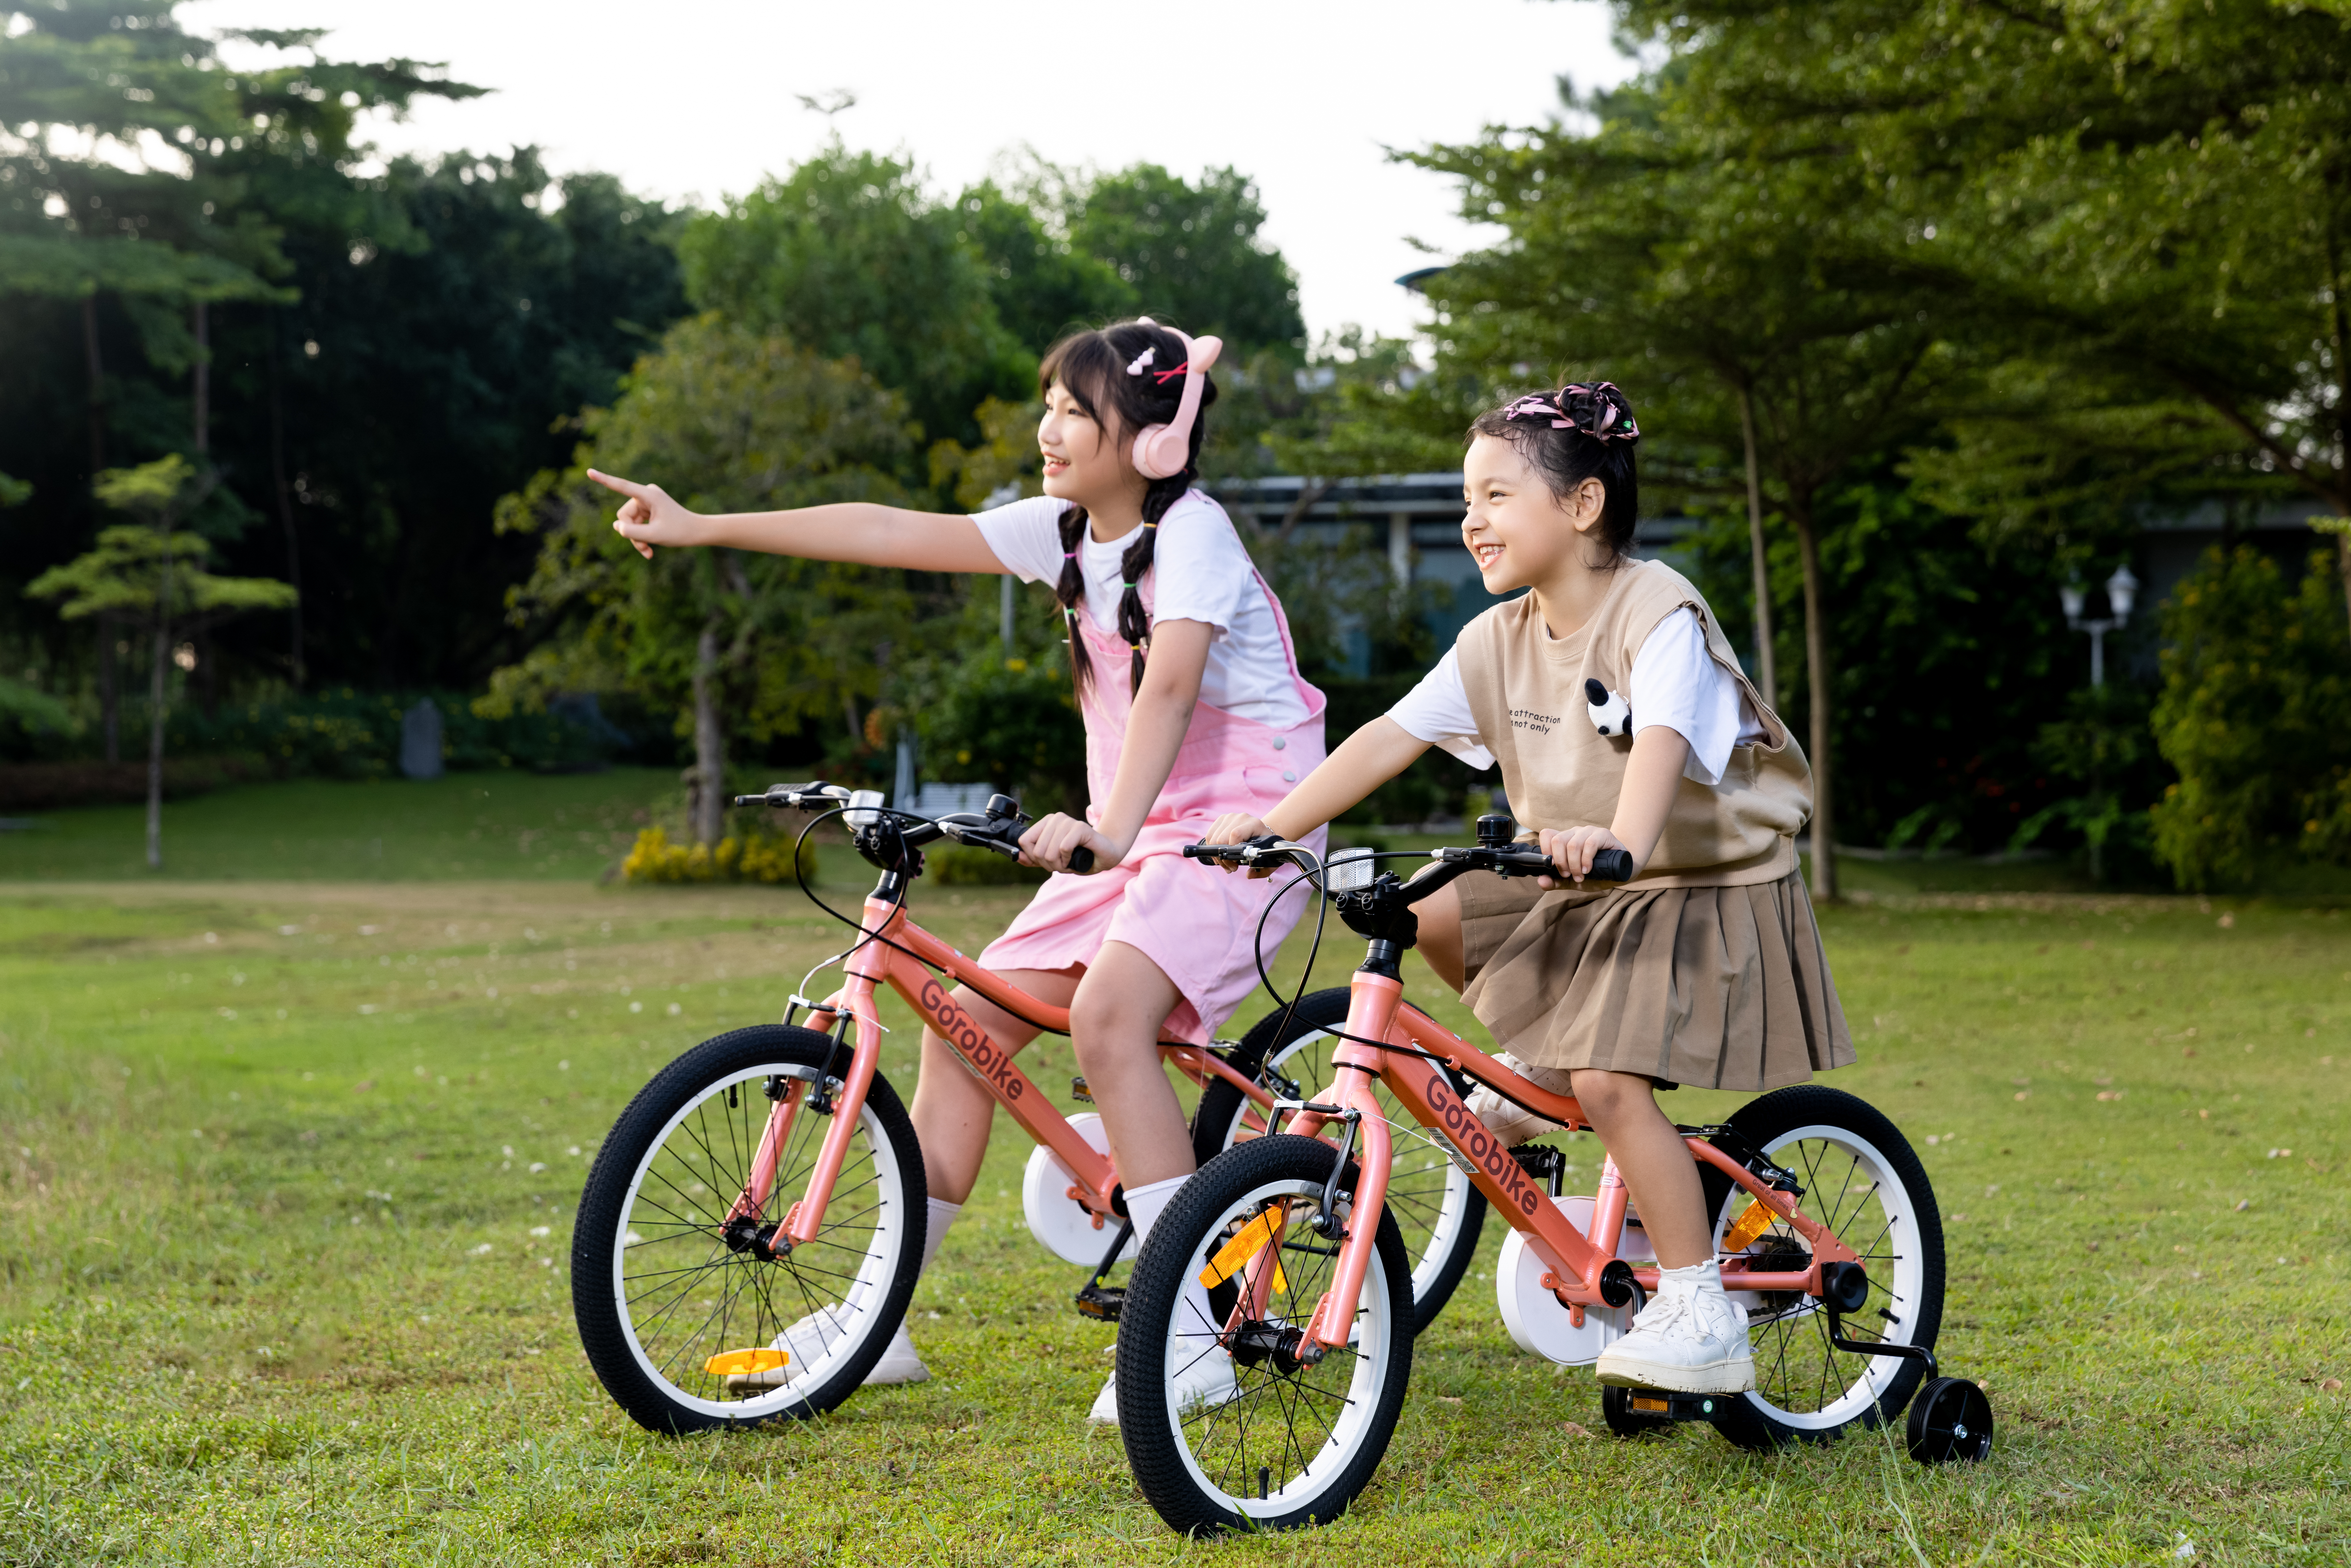 Mua xe đạp cho bé 3 tuổi: Lựa chọn tốt cho sức khỏe và sự phát triển của trẻ